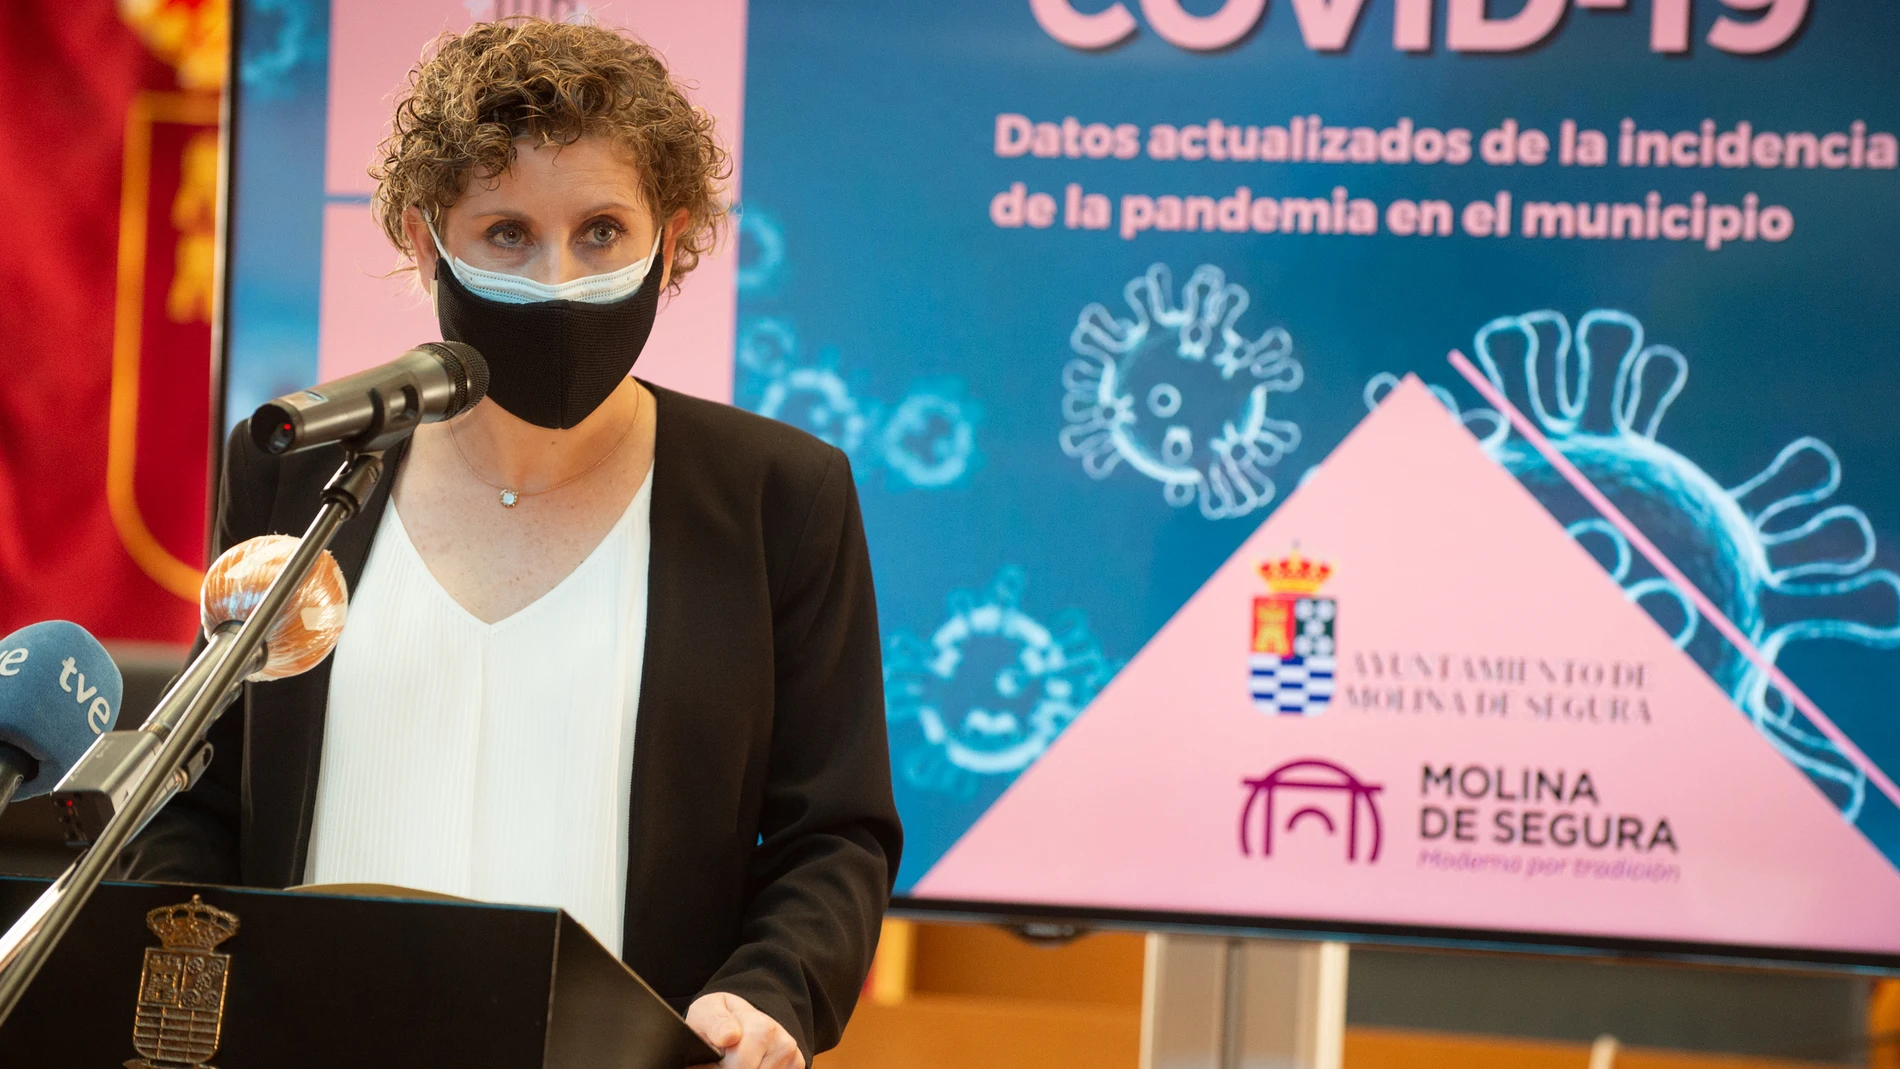 La alcaldesa socialista de Molina de Segura, Esther Clavero, durante una rueda de prensa, en Murcia (España), a 21 de enero de 2021